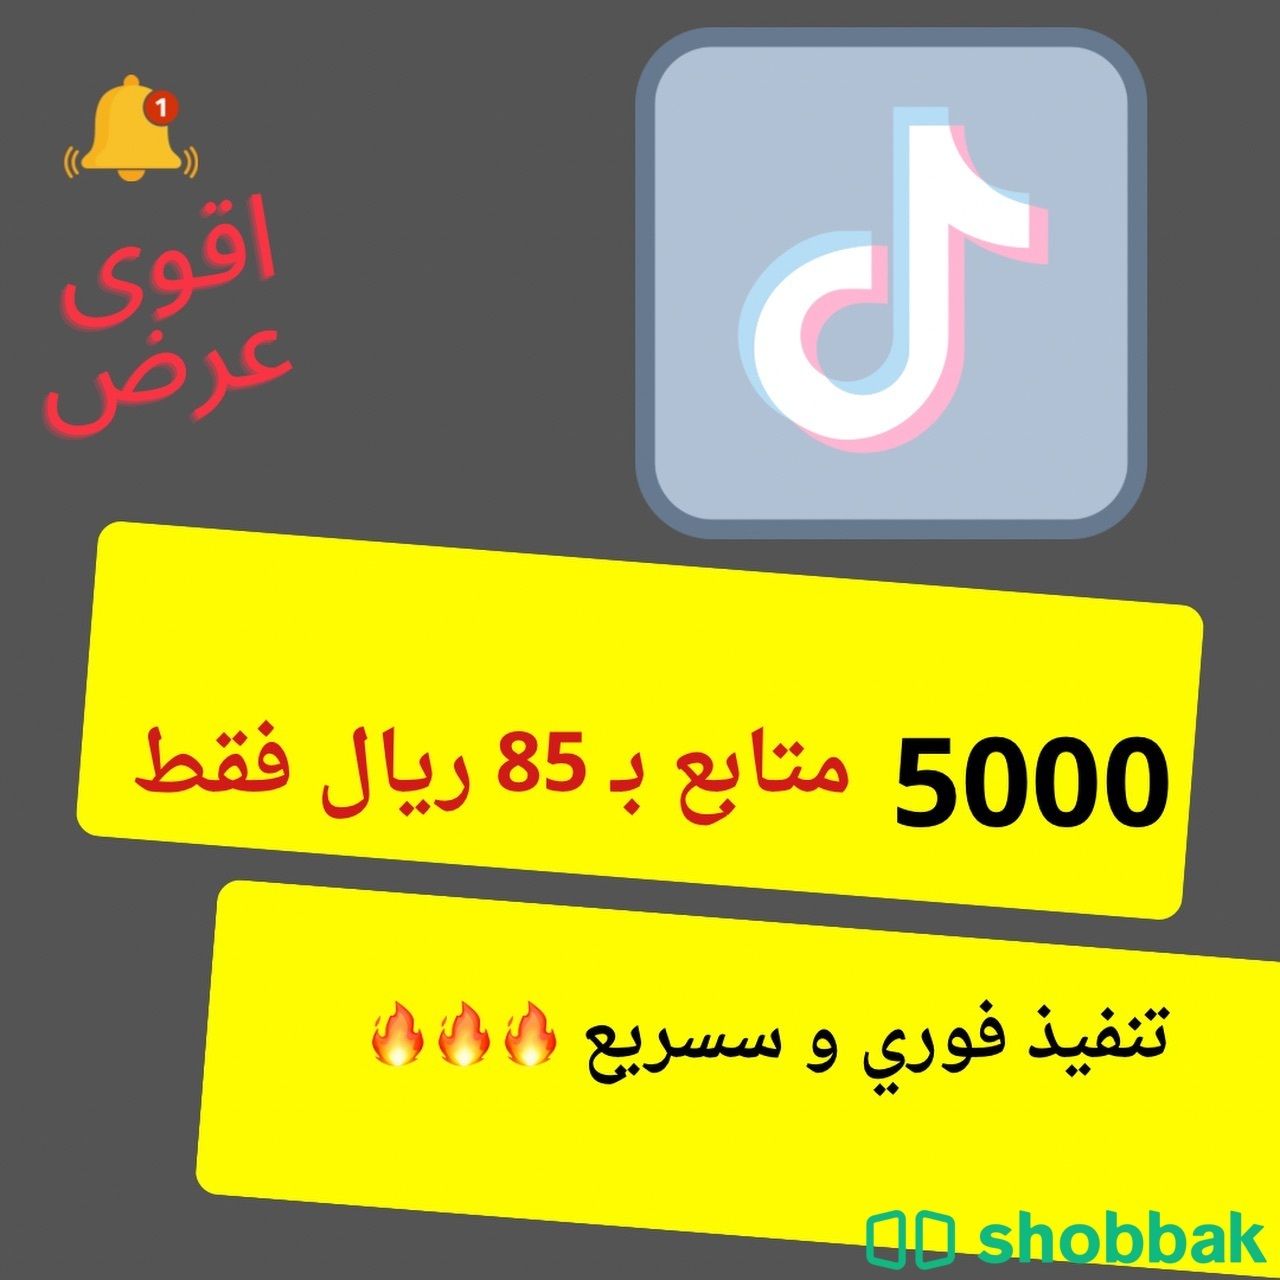 زيادة متابعين التيك توك  Shobbak Saudi Arabia